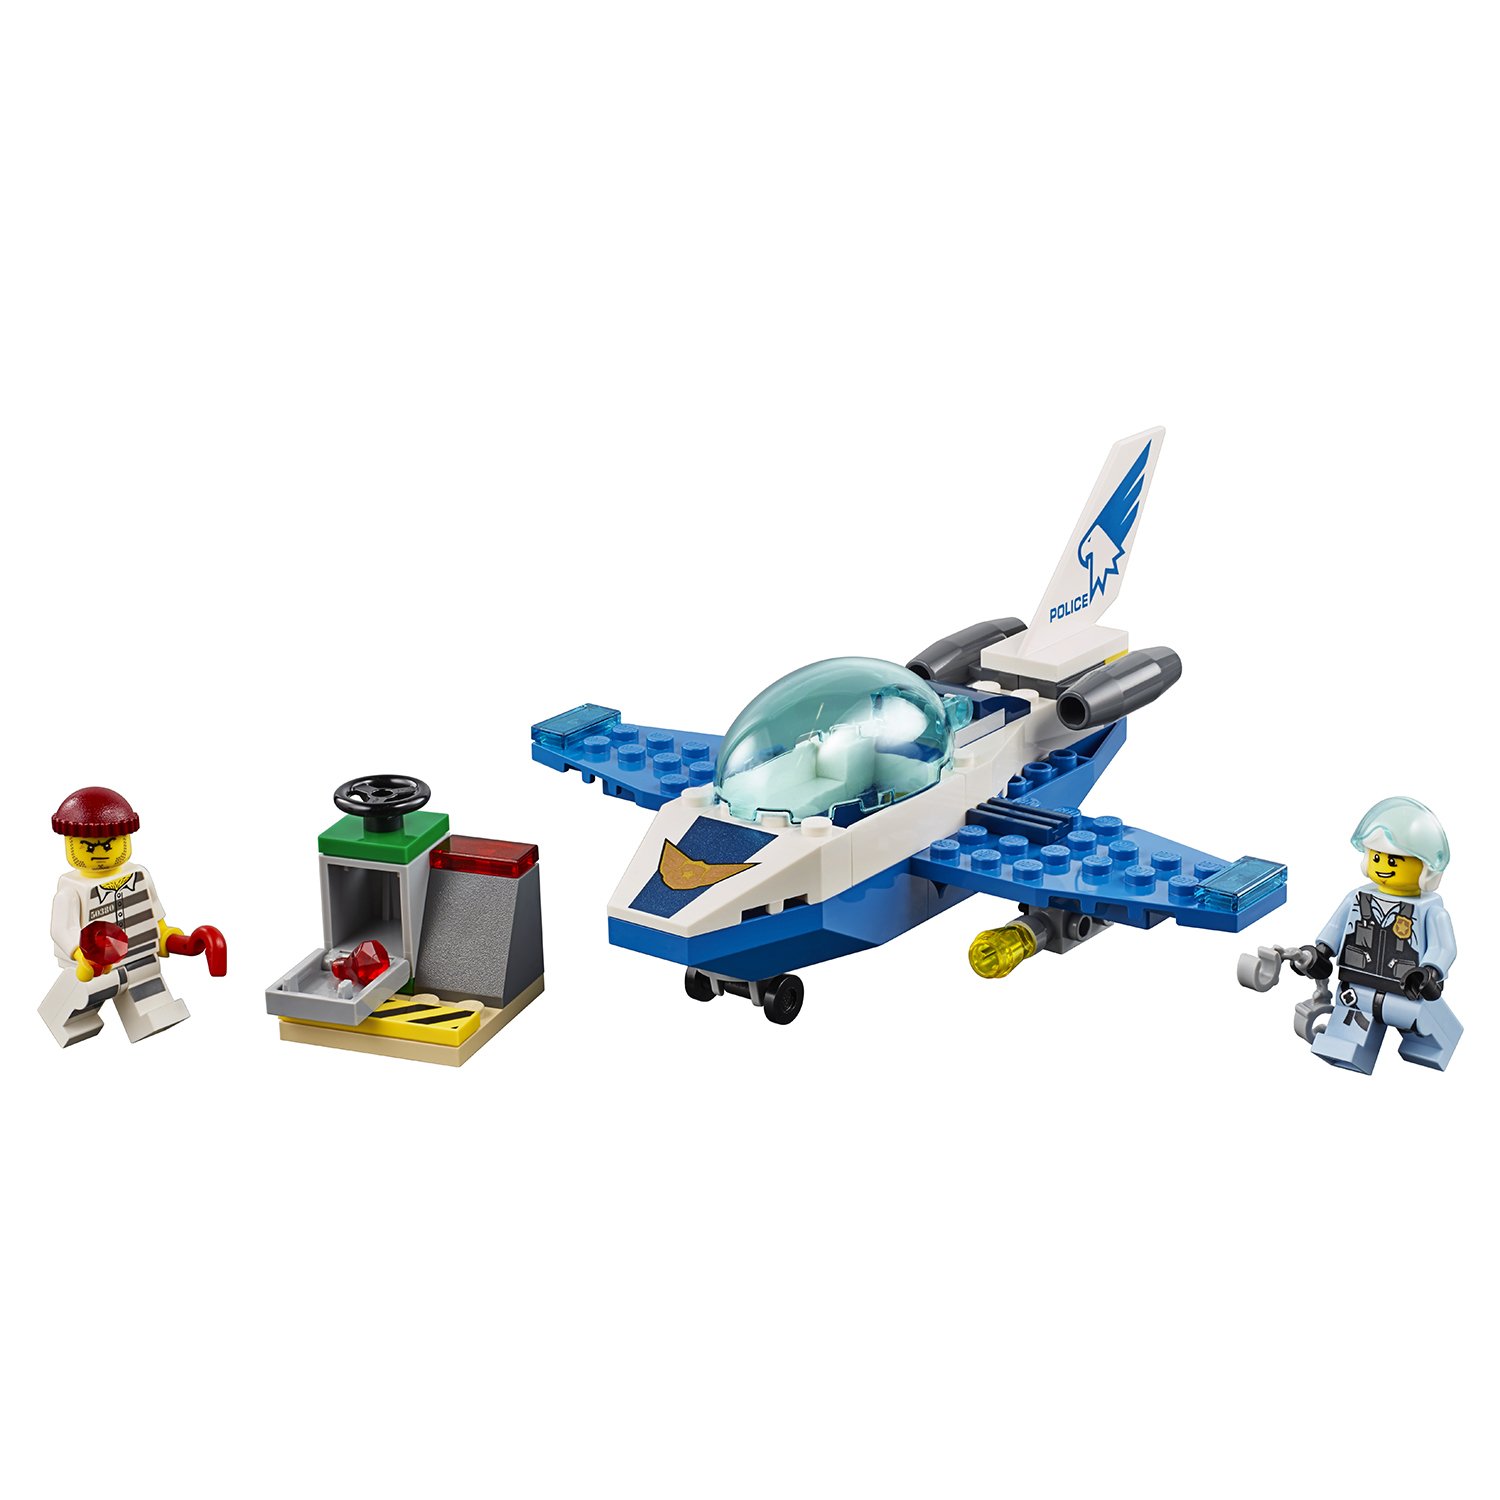 Lego City 60206 Воздушная полиция: Патрульный самолёт